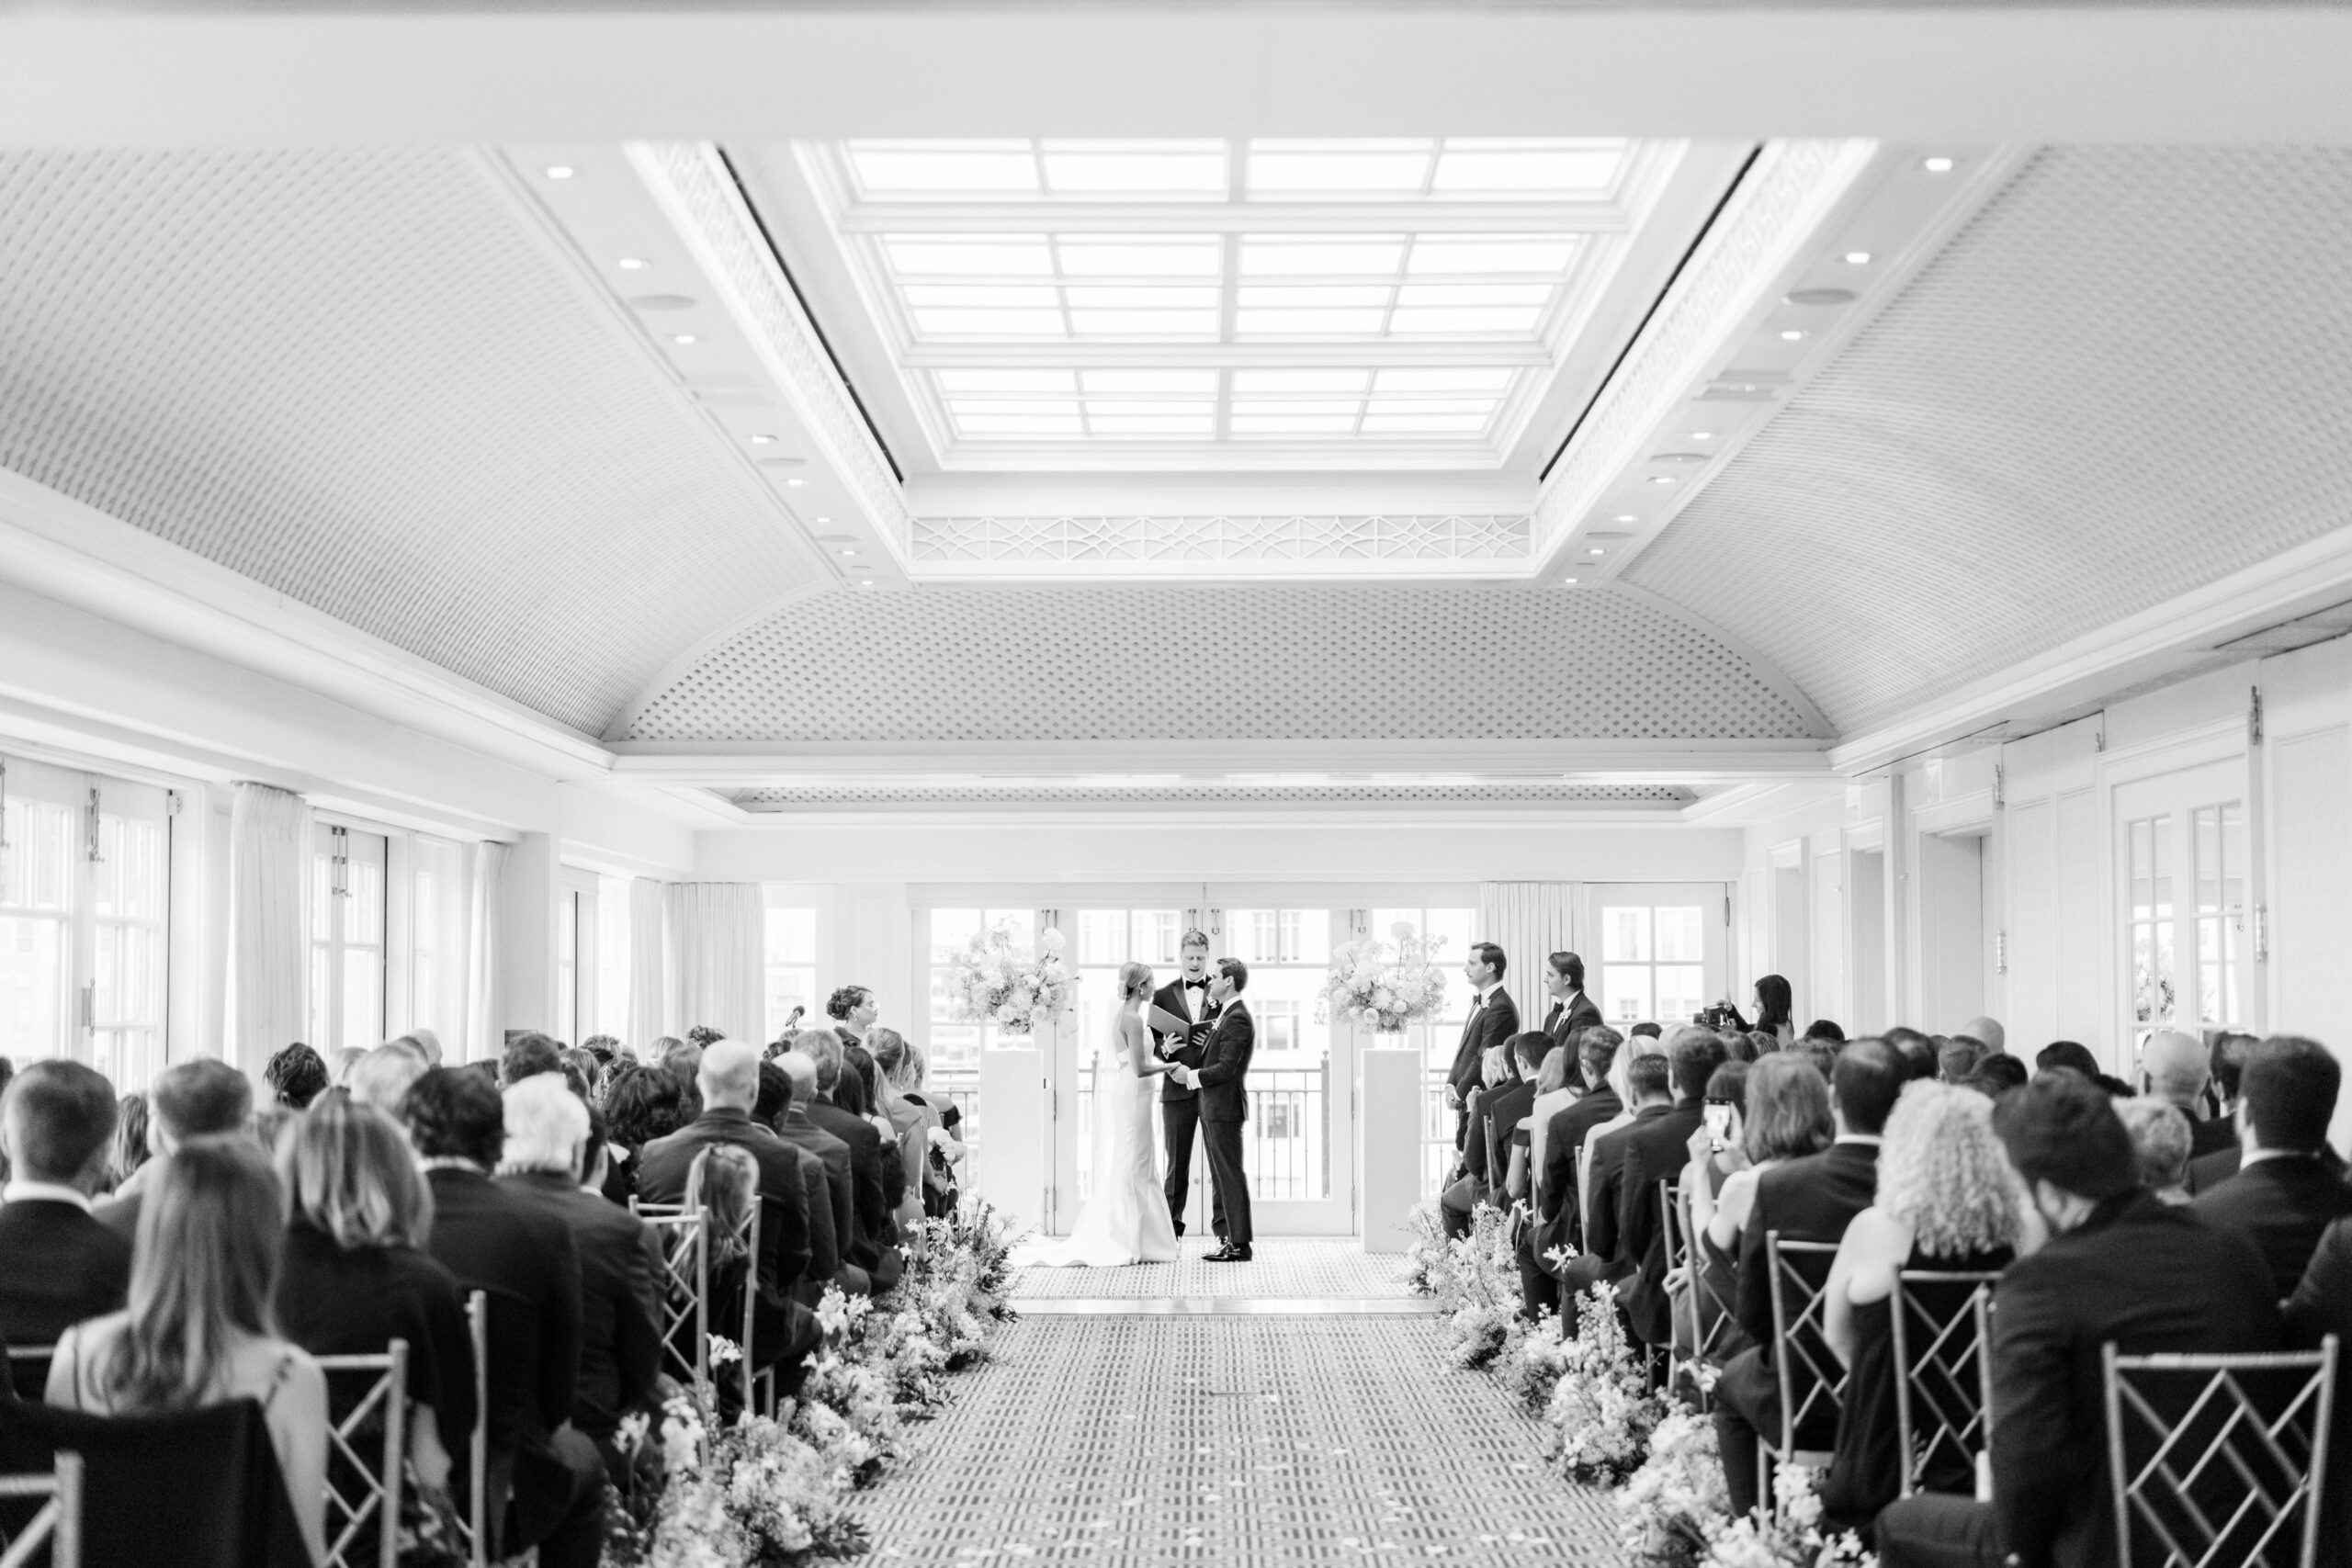 A chic black tie wedding at the elegant Hay Adams hotel in Washington, DC. 